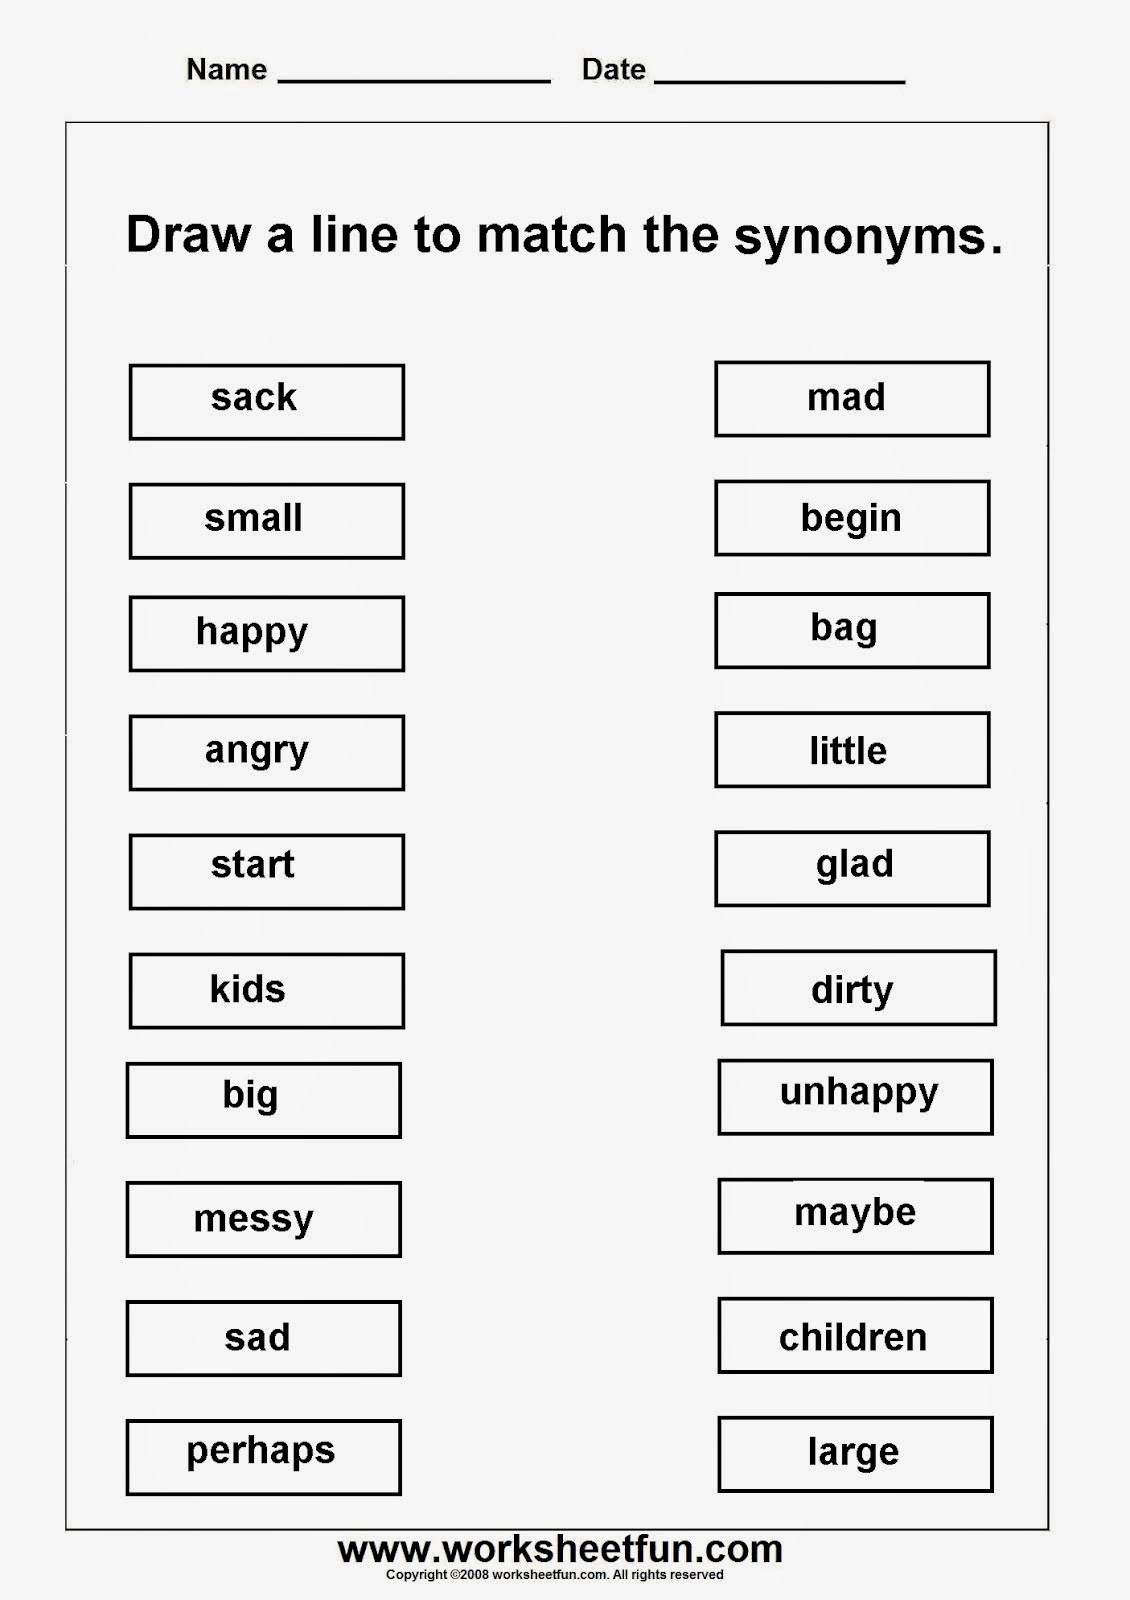 homework help synonyms